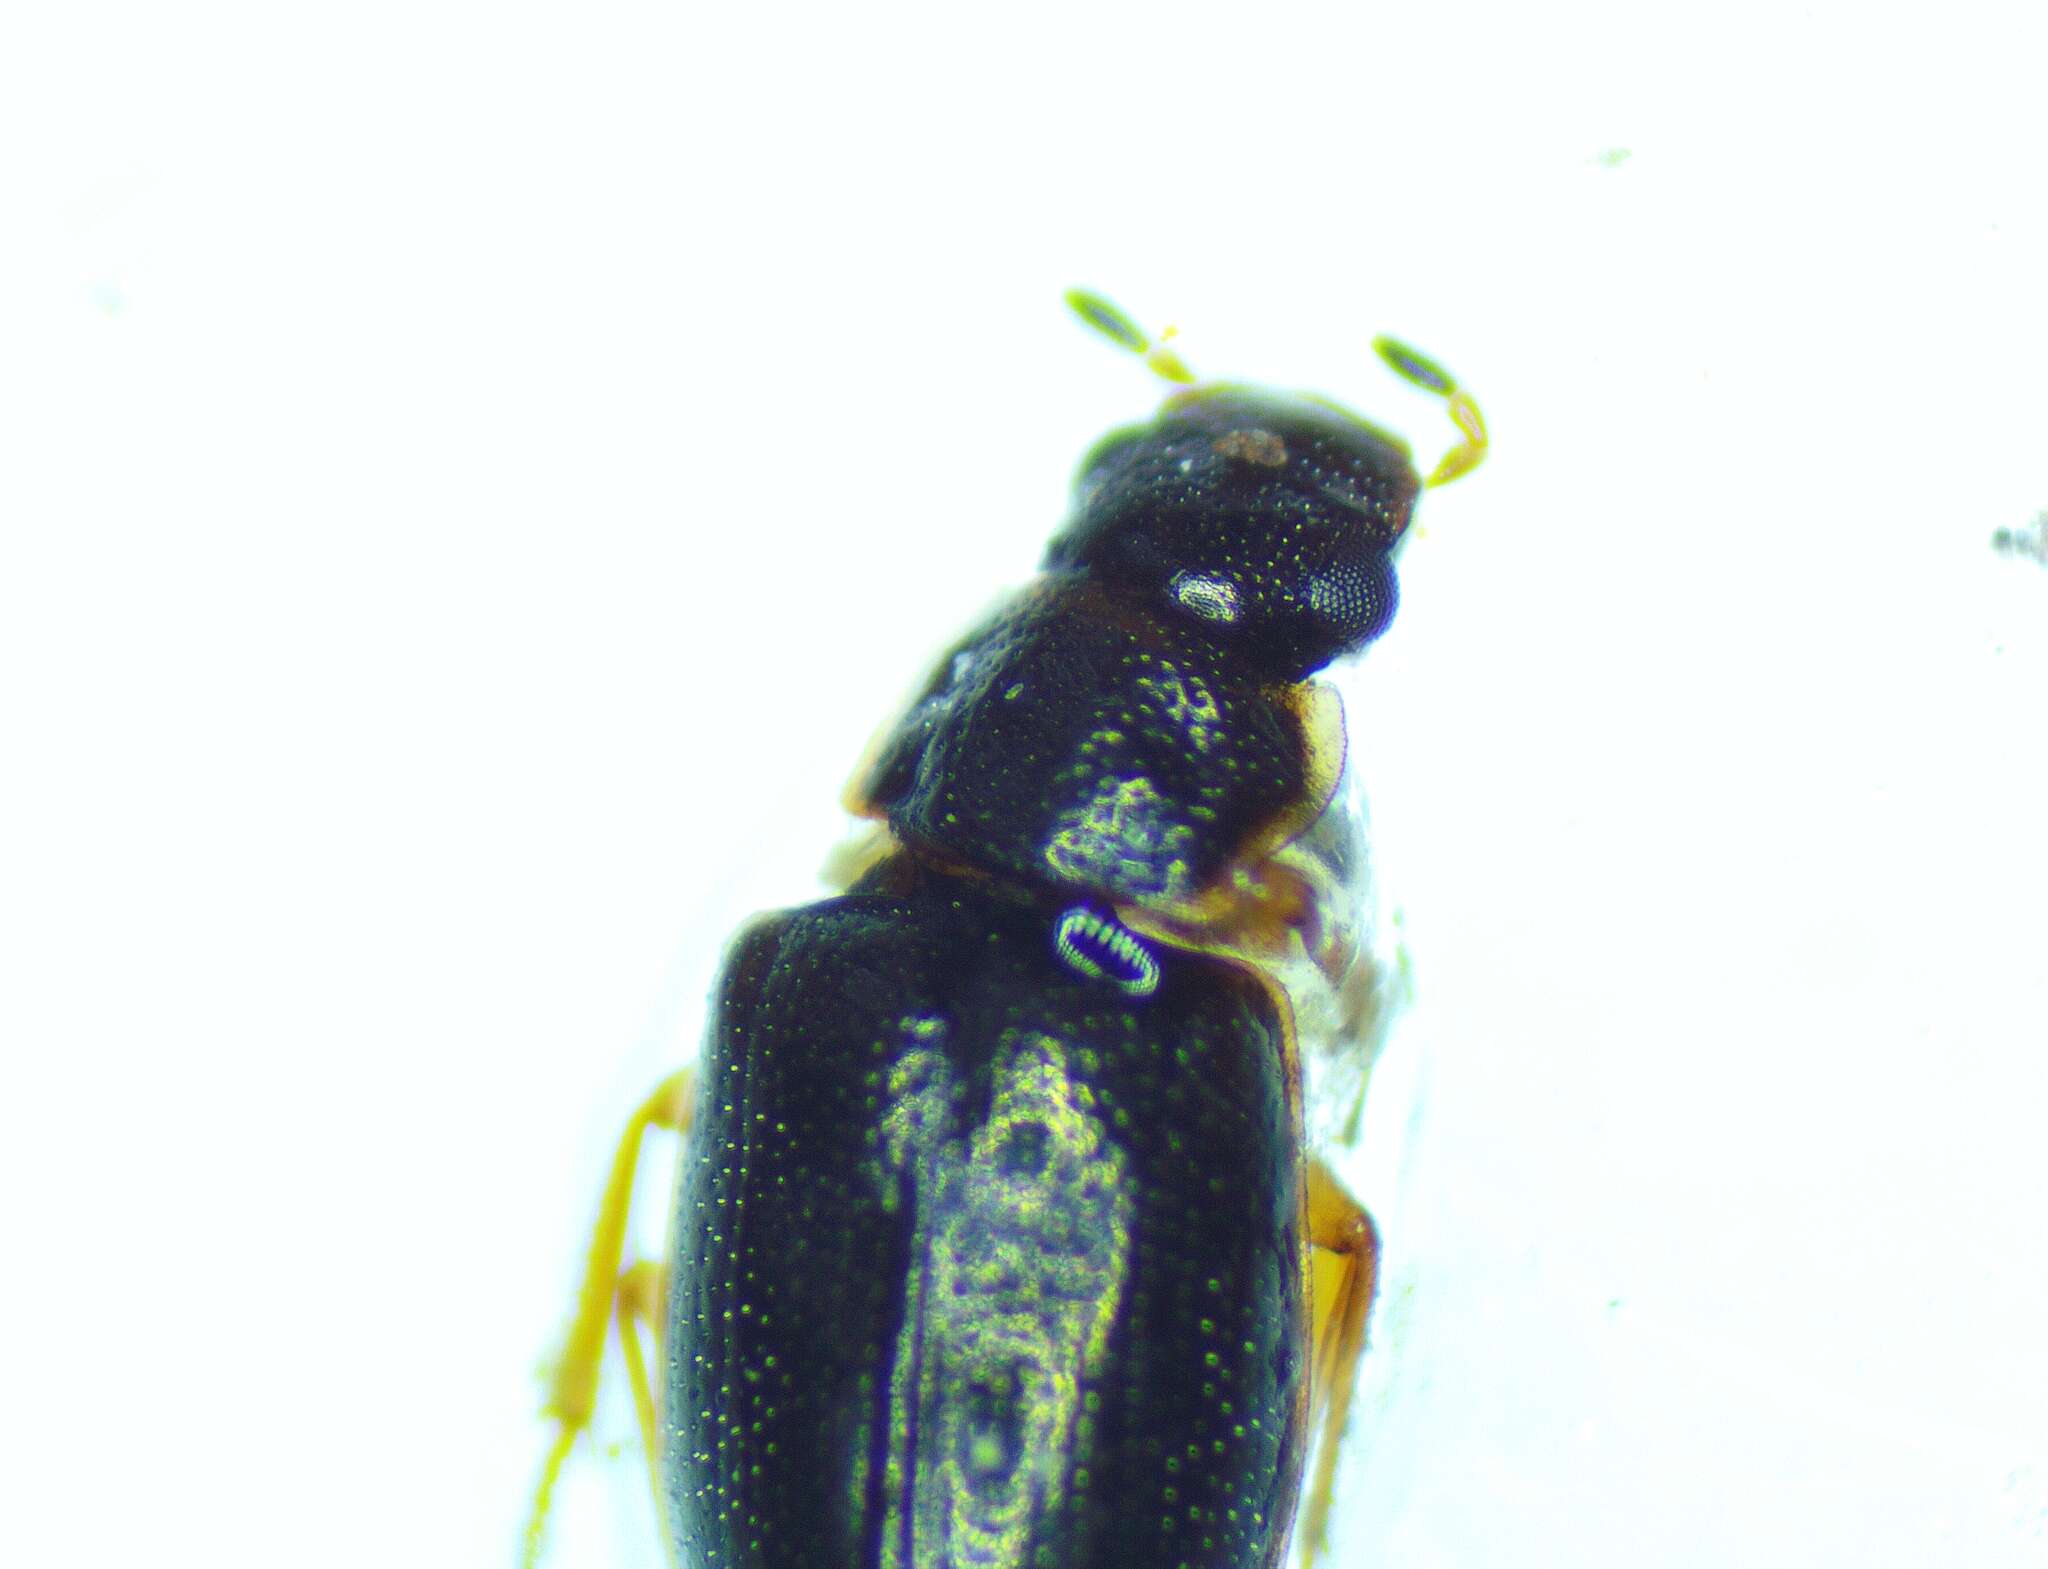 Image of Reefton water beetle